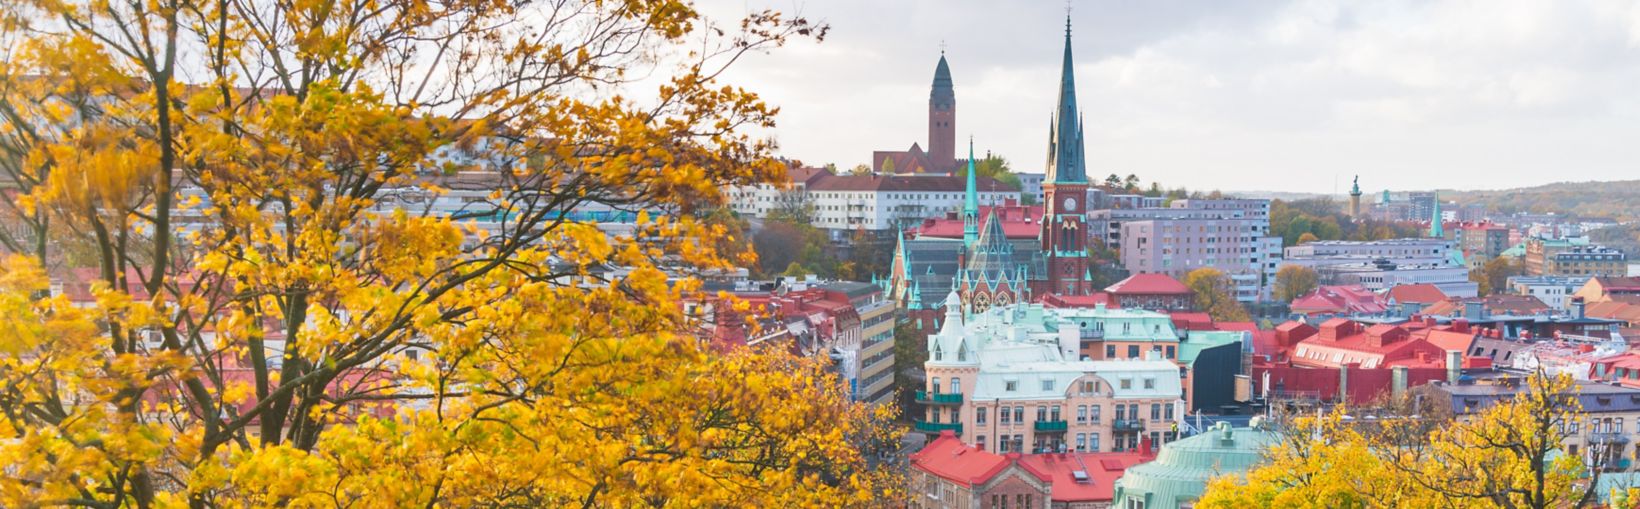 Ville de Göteborg vue derrière une colline lors d’une journée d’automne